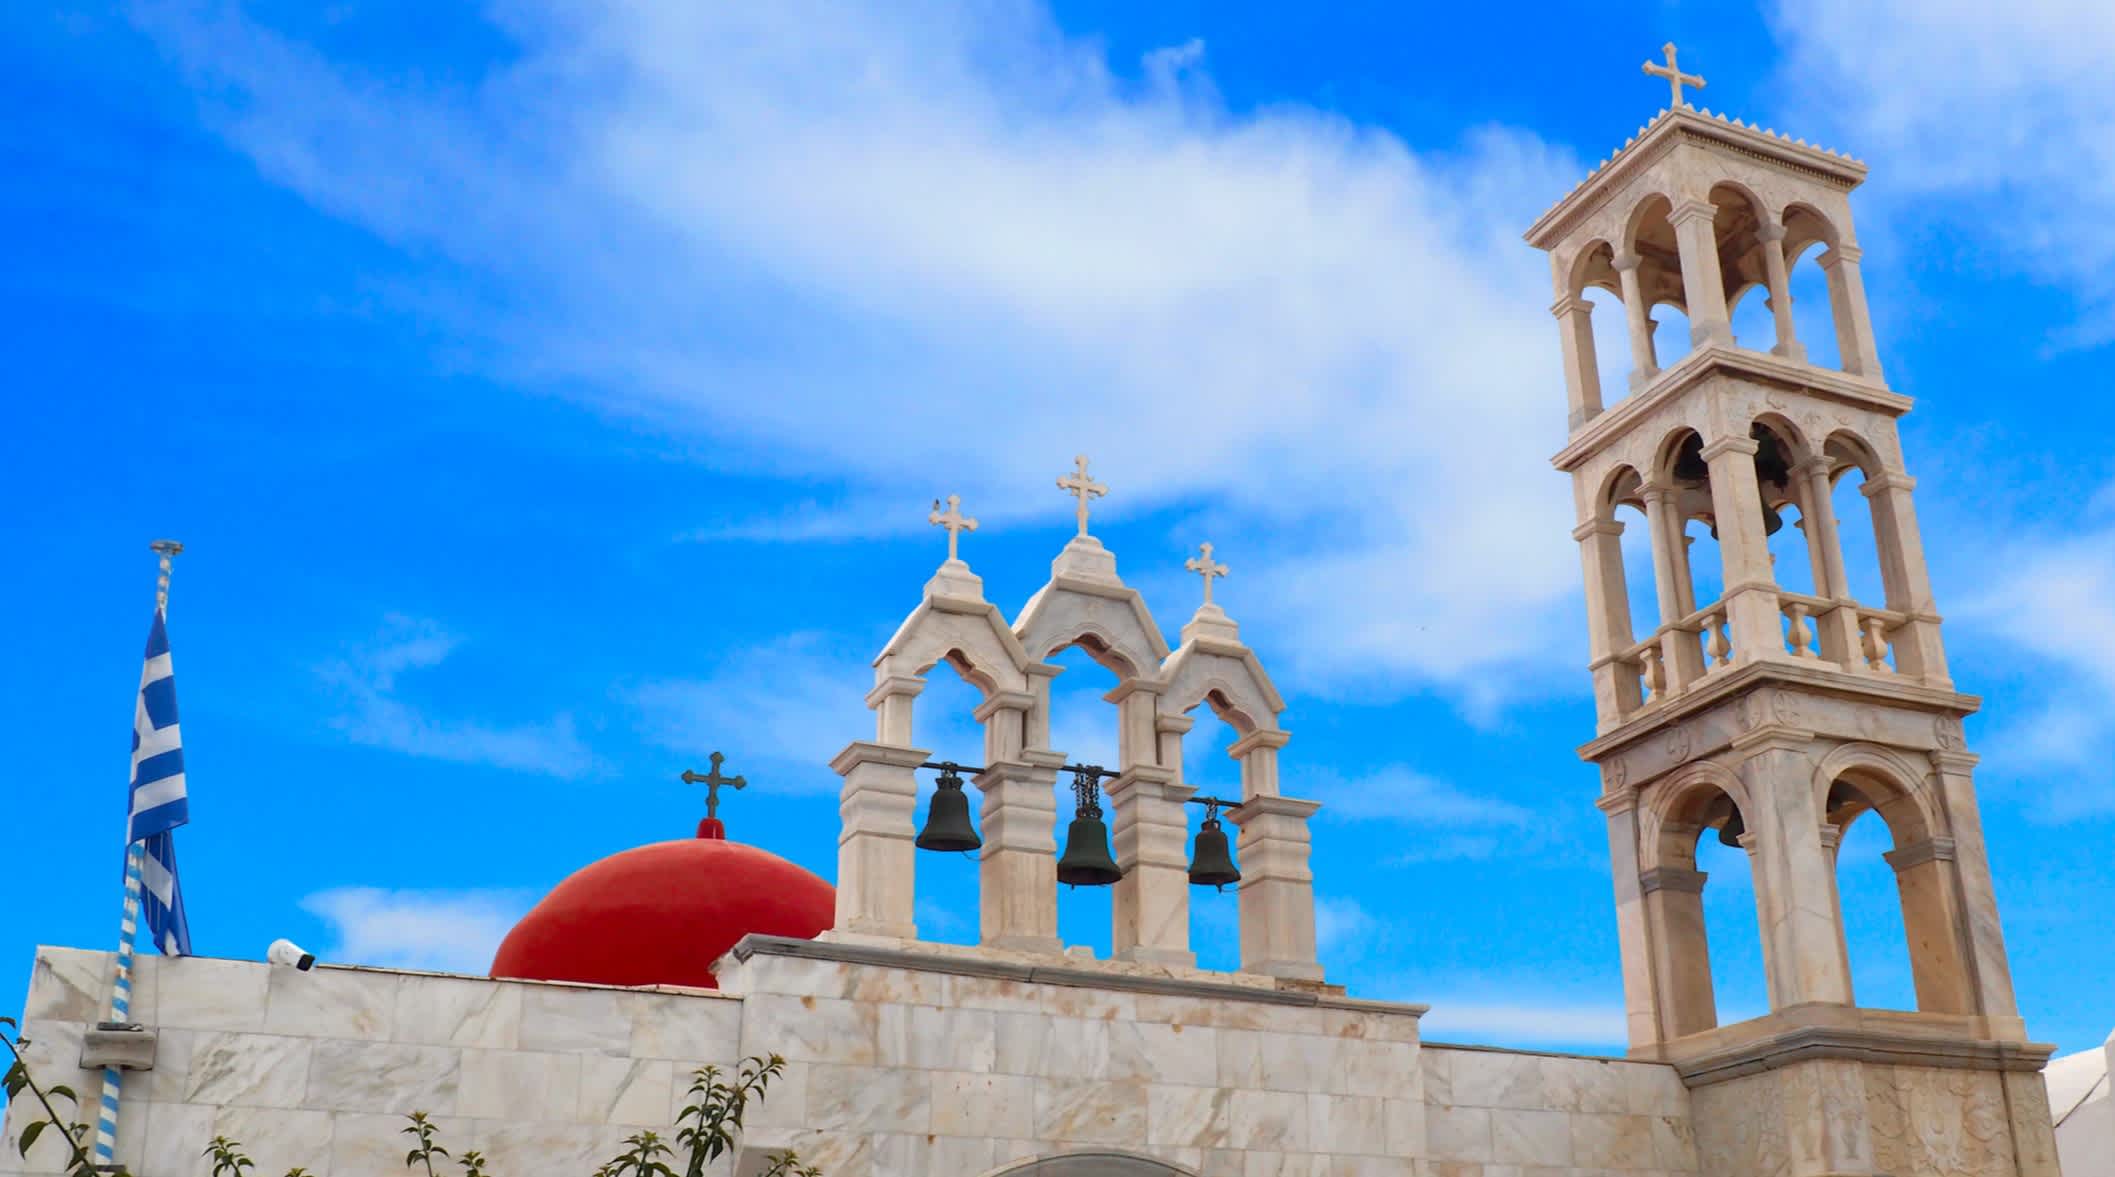 Célèbre monastère Panagia Tourliani, dans le village d'Ano Mera, à Mykonos, Cyclades, Grèce